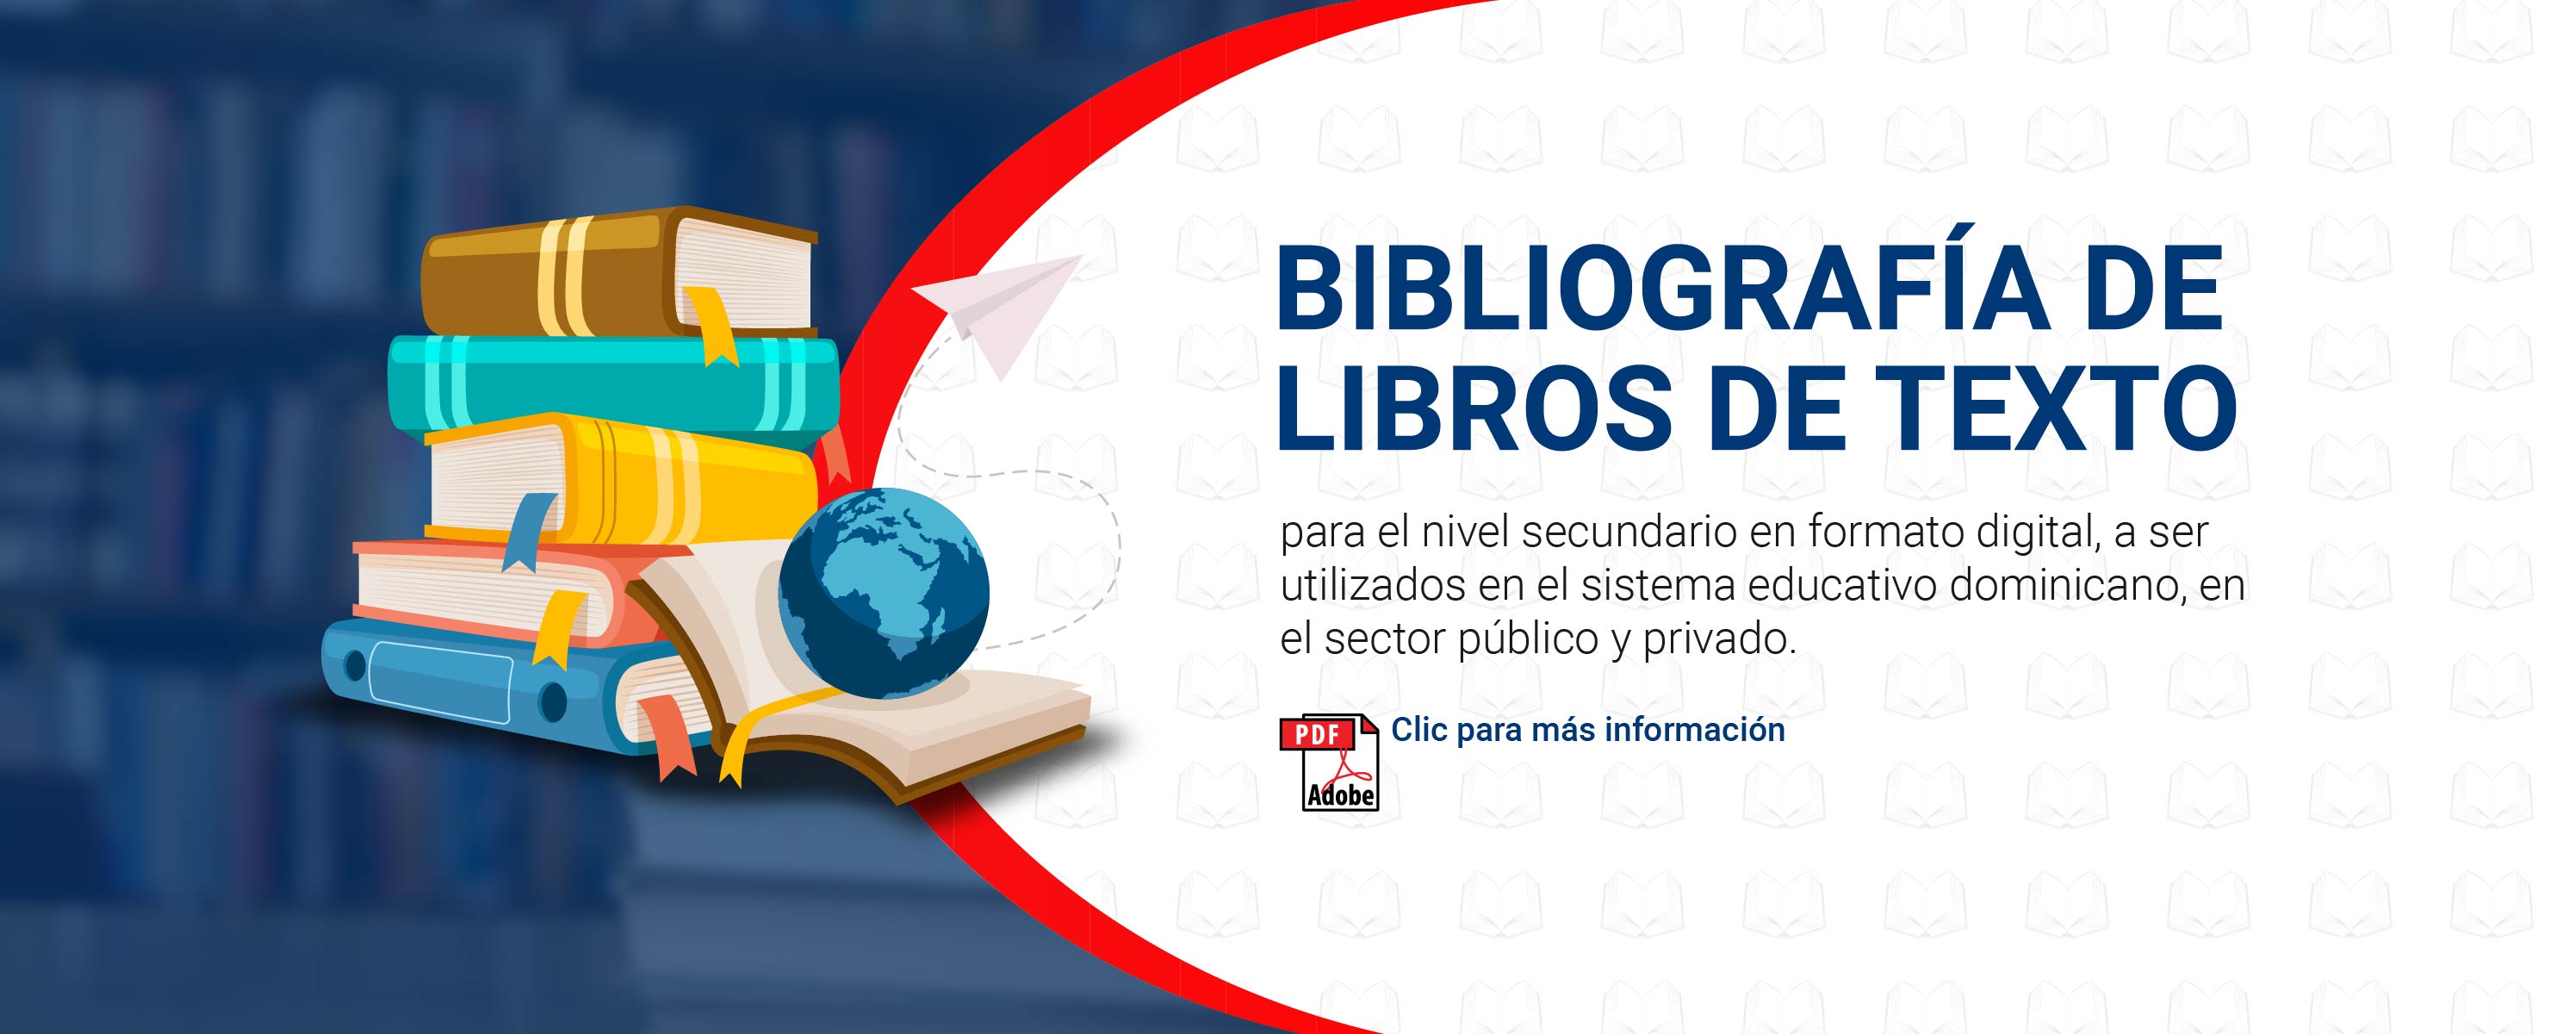 Ord. 01-2022 que aprueba la bibliografía de libros de texto para nivel secundario en formato digital, utilizado en el sistema educativo dominicano, sector público y privado.